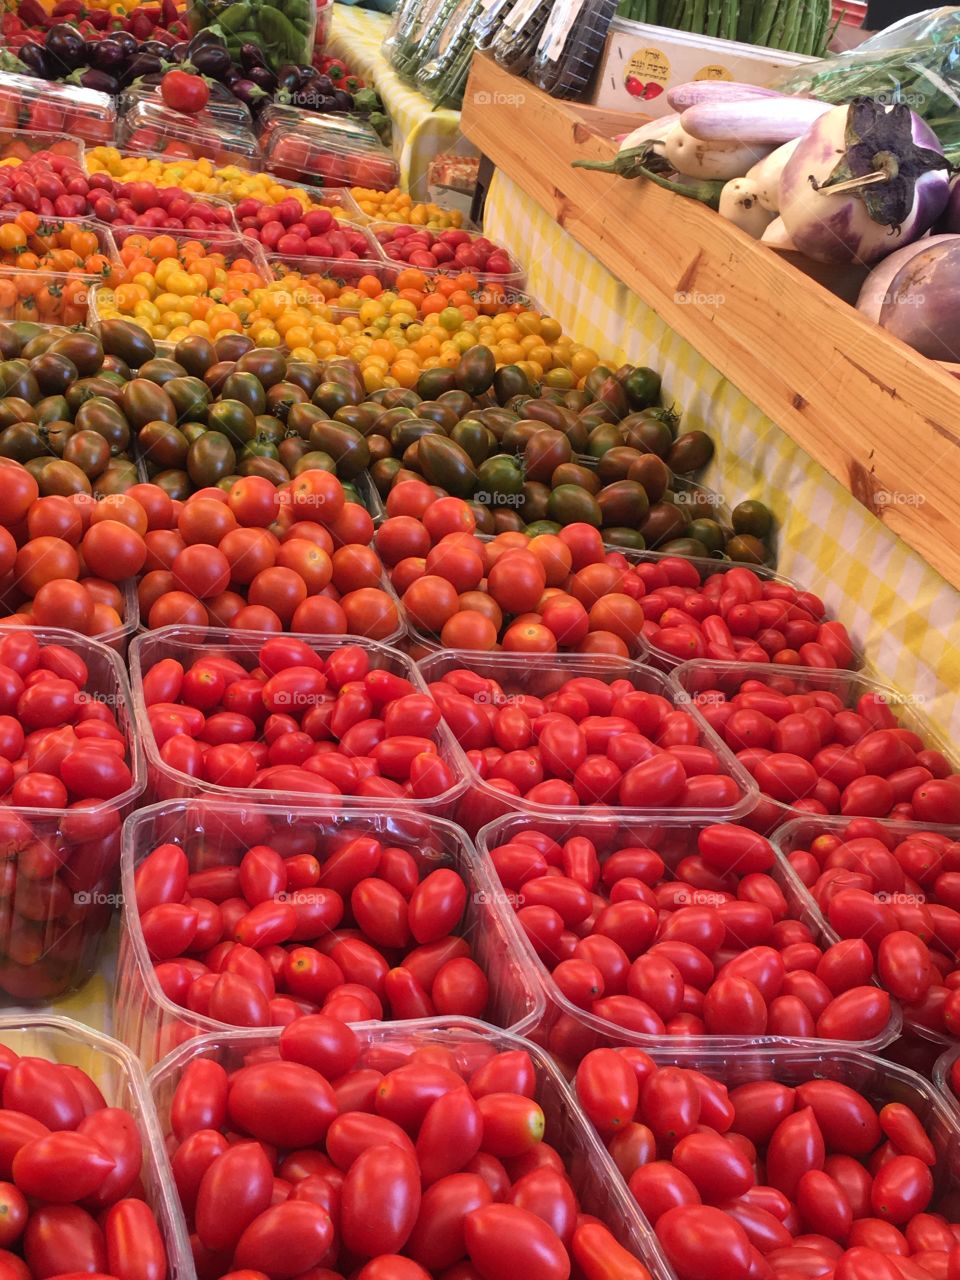 Cherry tomatoes variety 